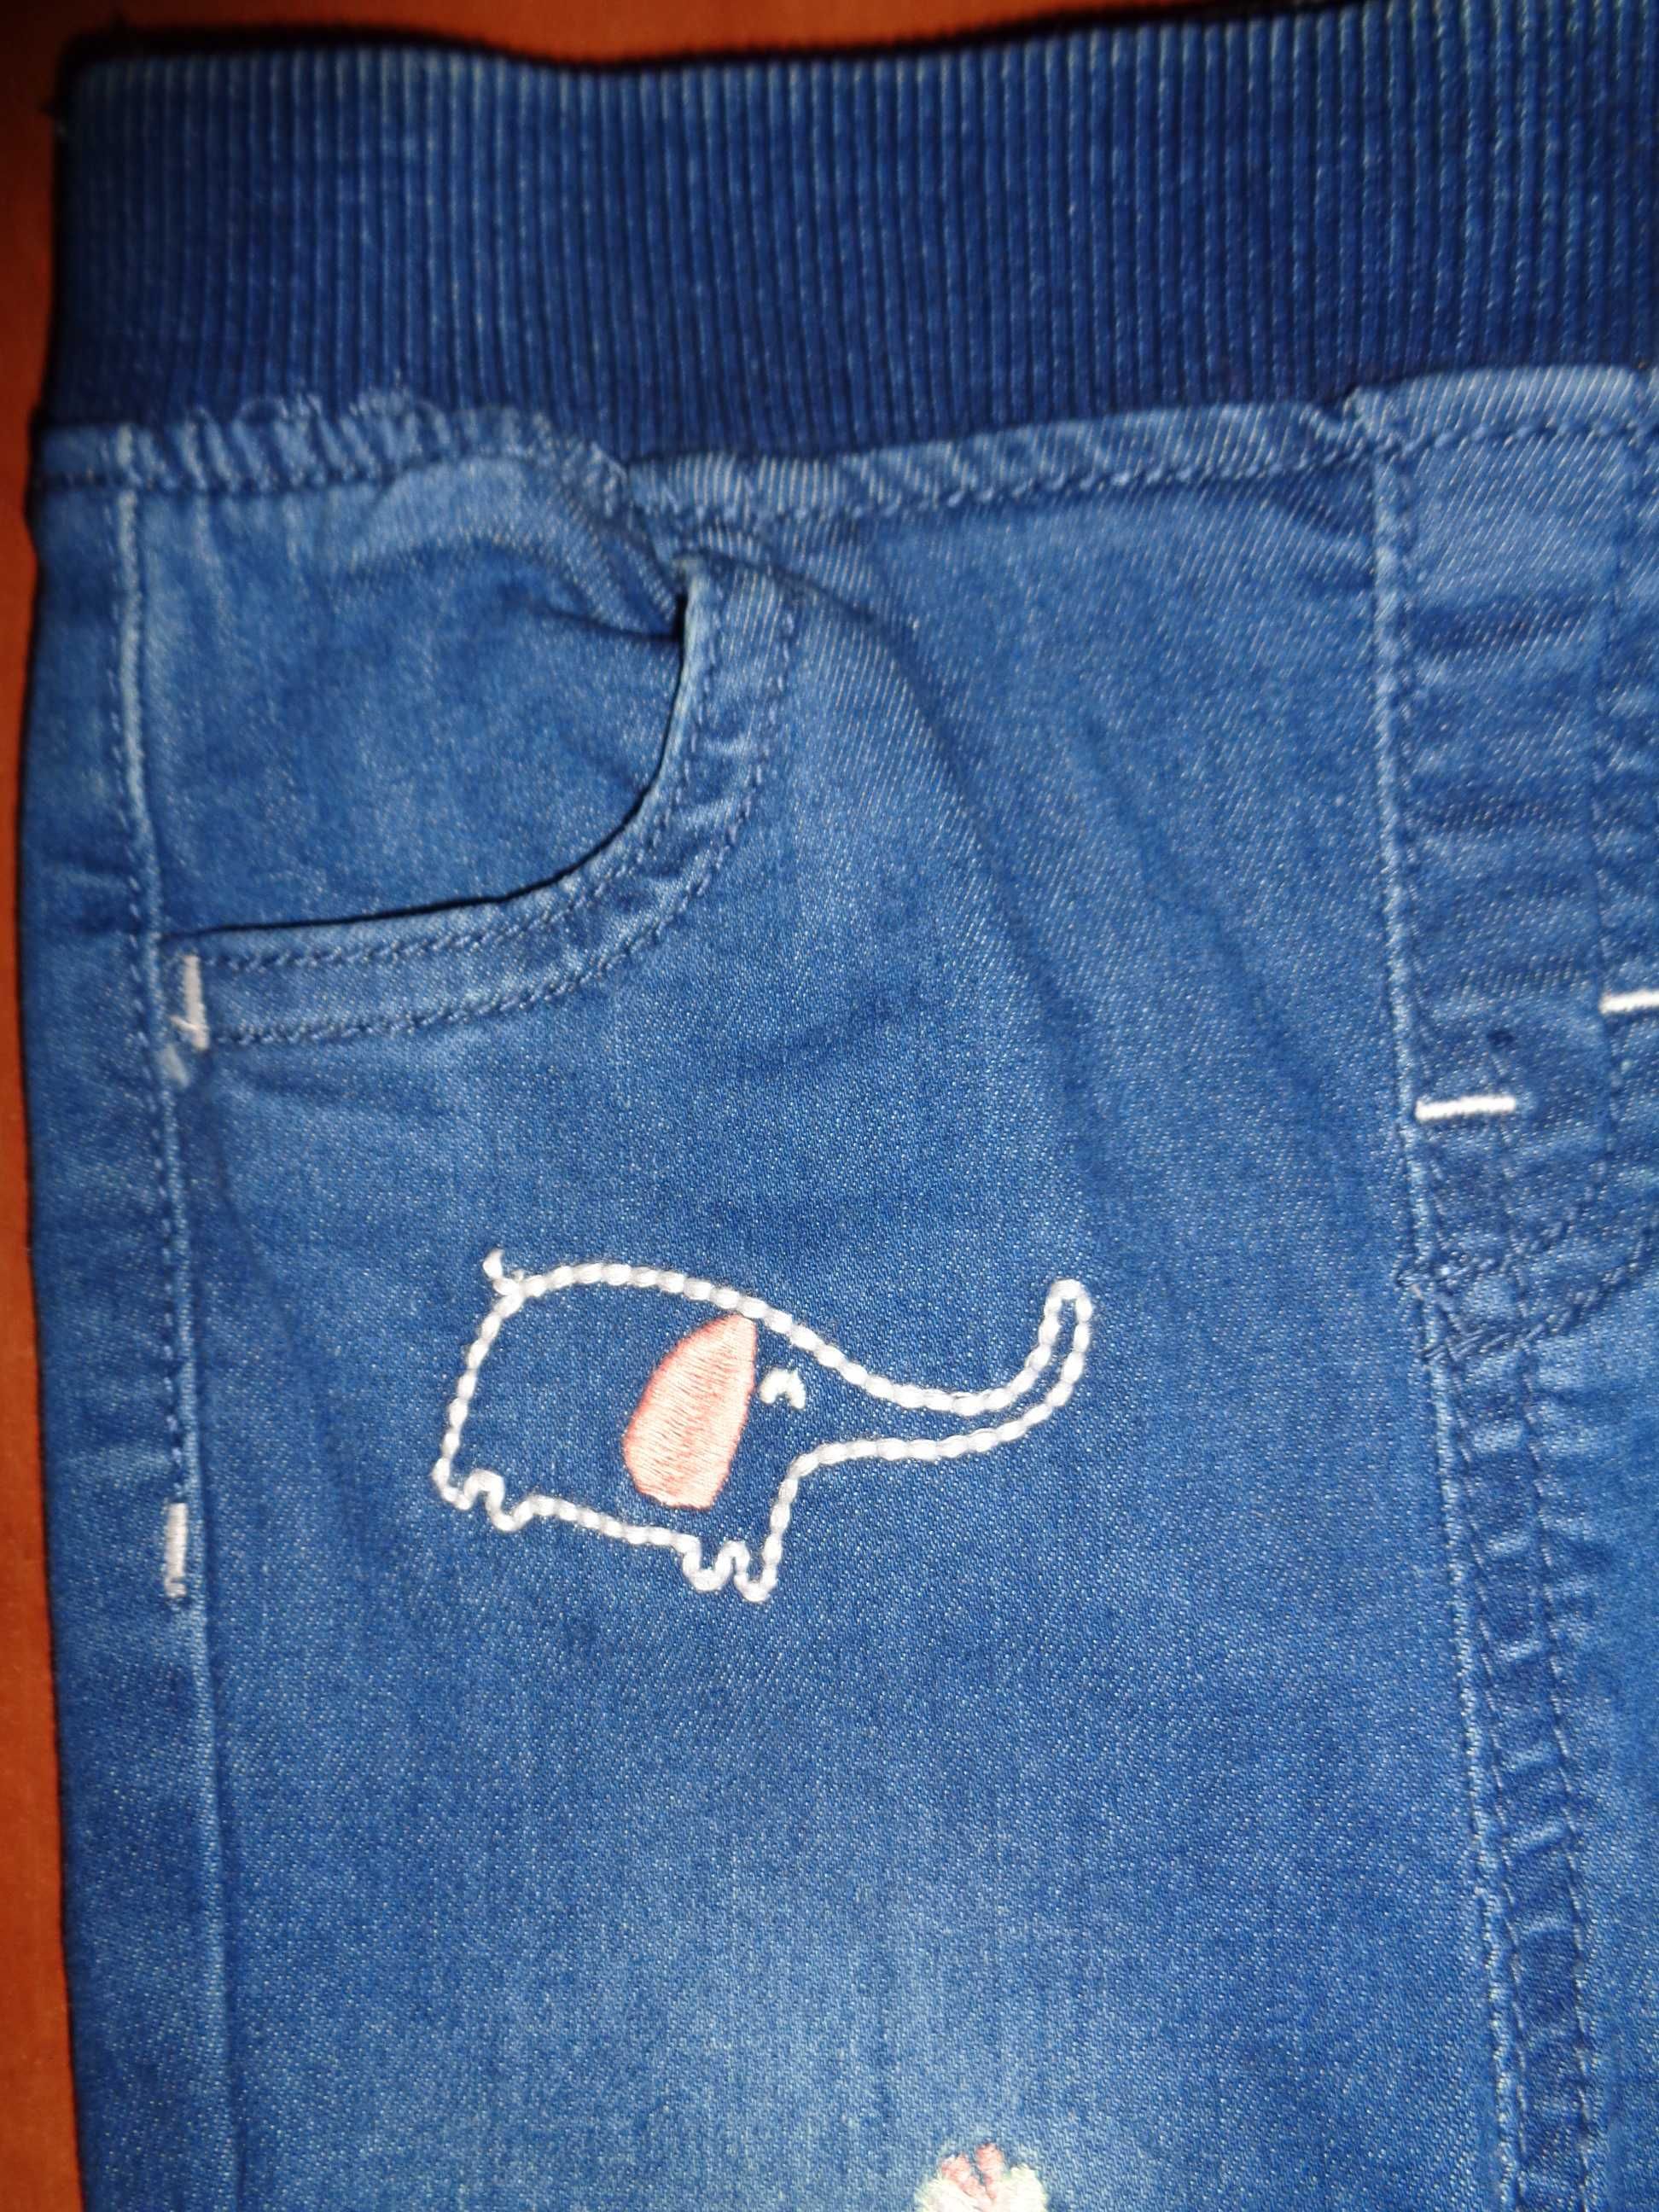 Spodnie w stylu dżinsy marki Nutmeg Baby roz 80 , 9-12 m-cy